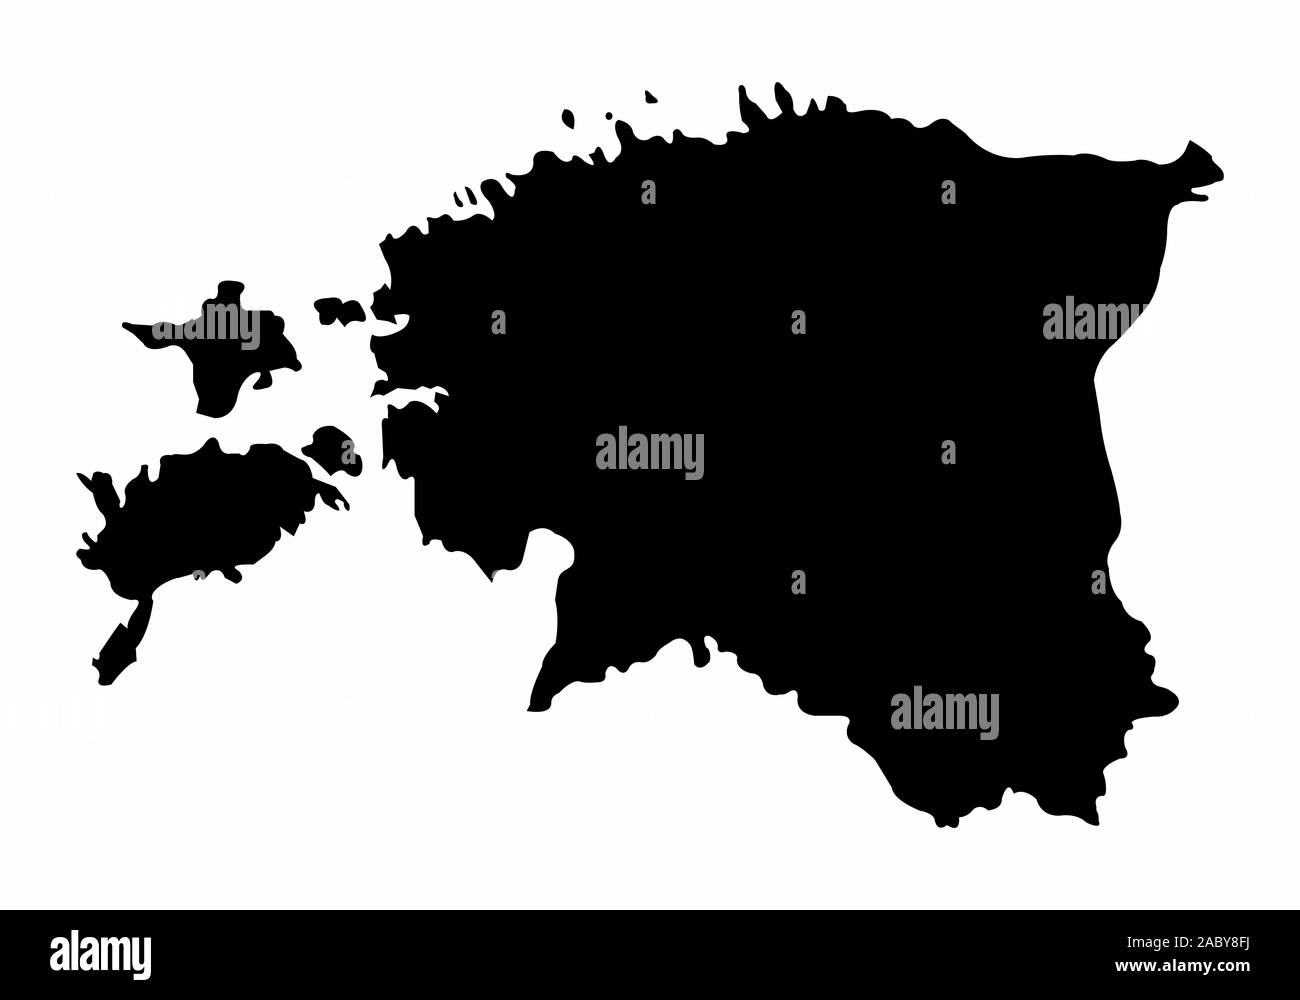 Estonia silhouette map Stock Vector